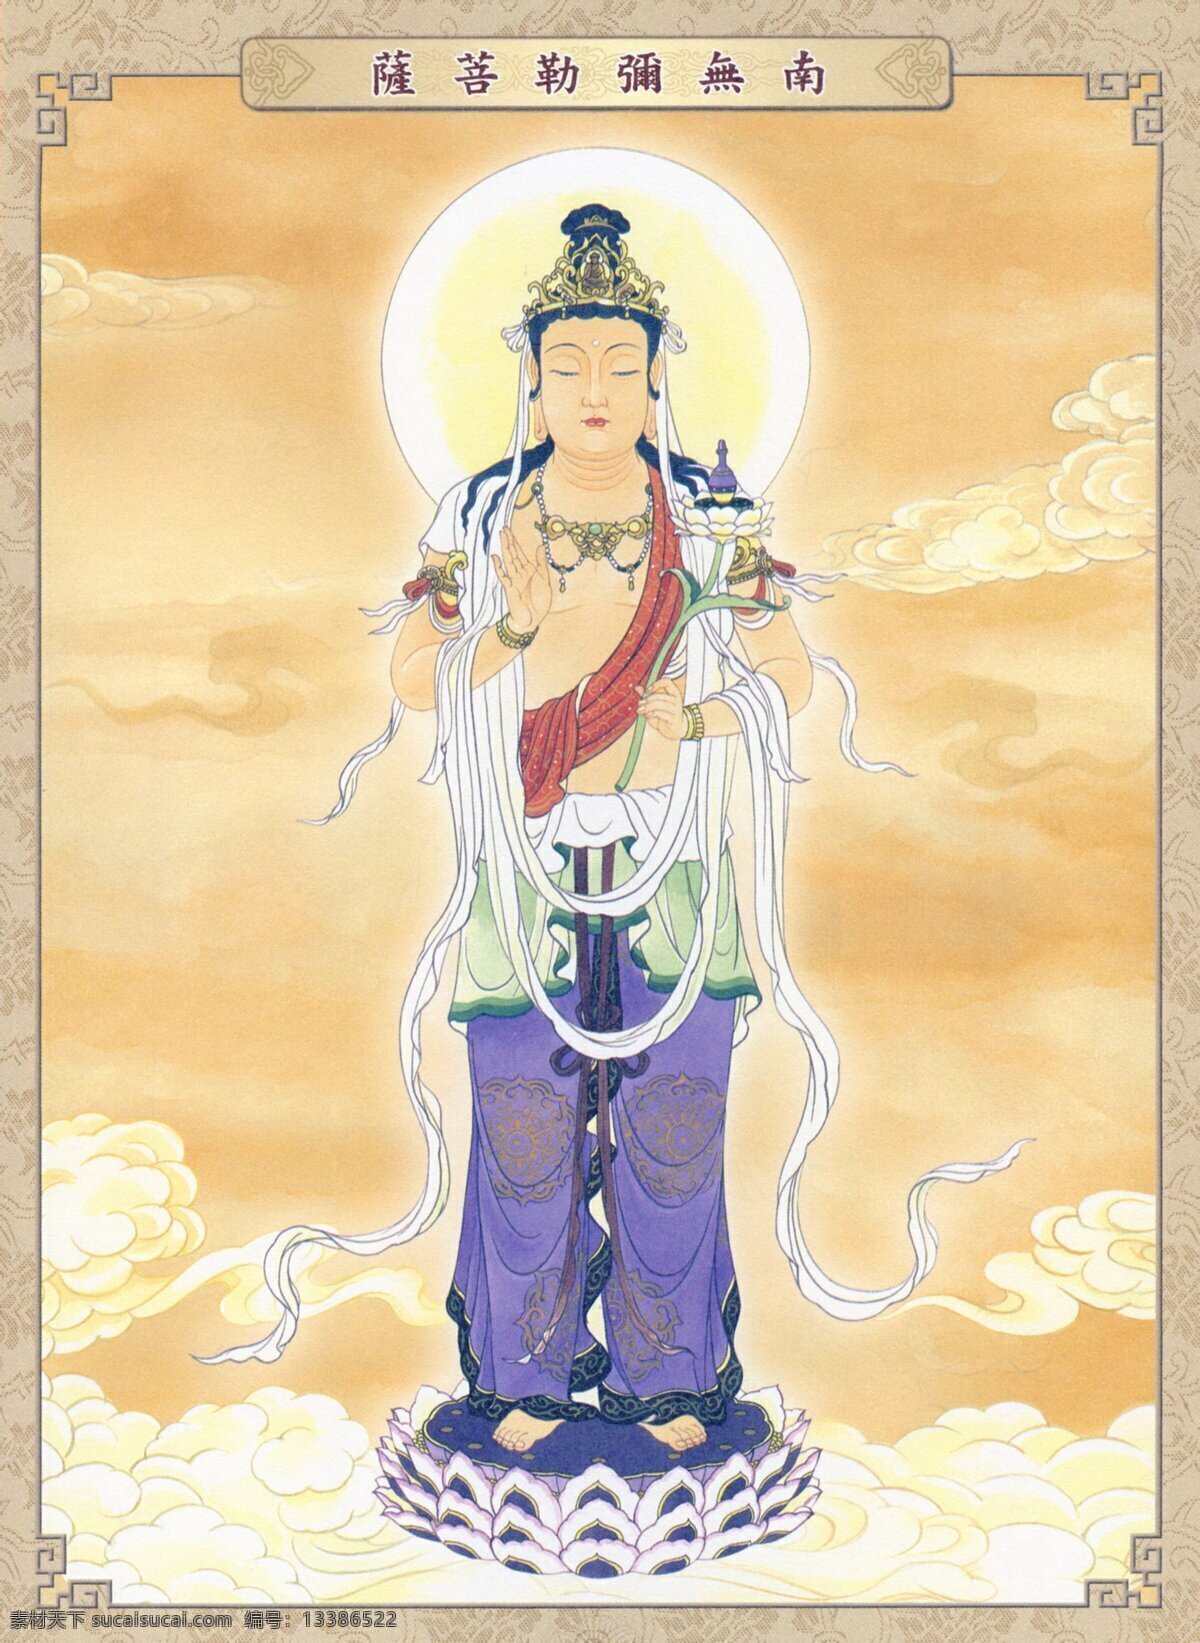 弥勒菩萨 弥勒佛 佛祖 如来 宗教 佛教 汉传佛教 文化艺术 宗教信仰